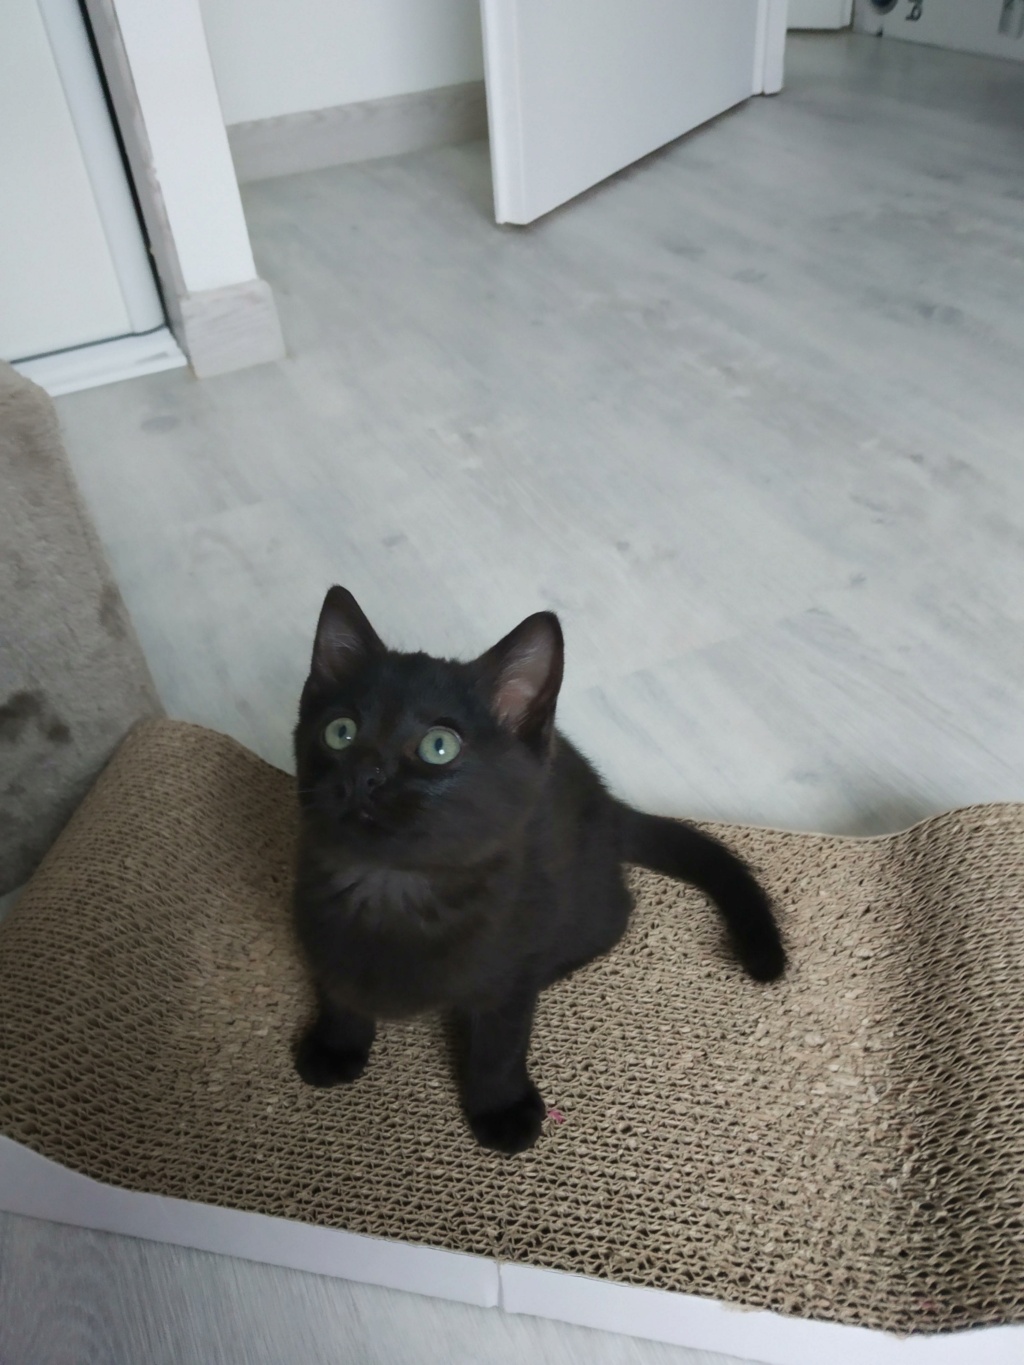 rapido - RAPIDO, chaton mâle noir, né le 30/08/2020 Img_2208